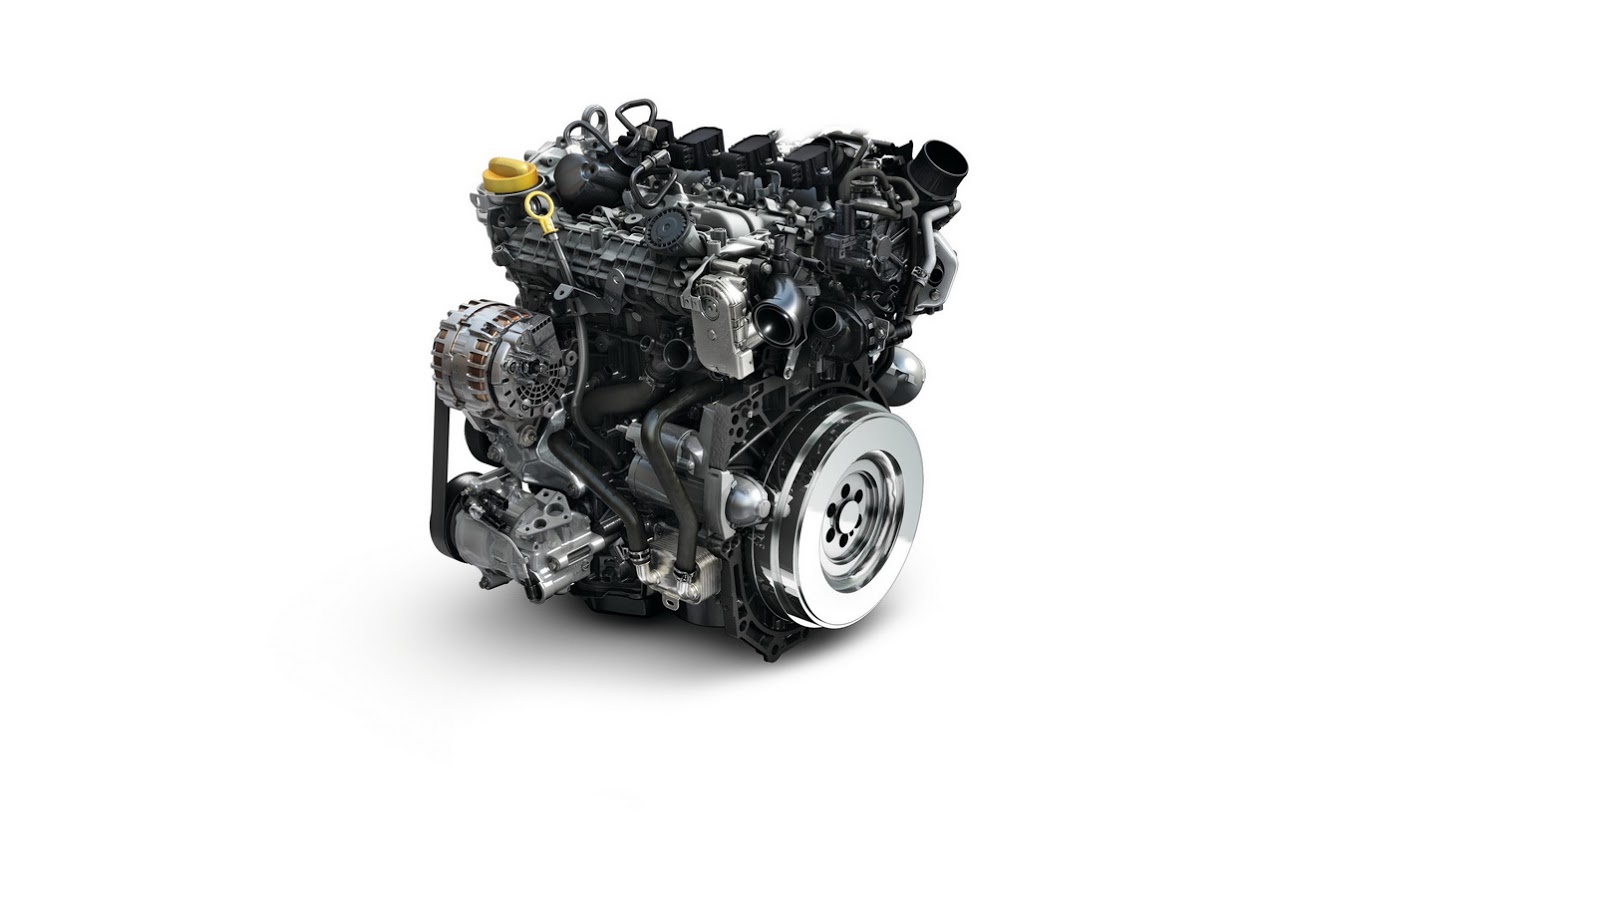 Berita, Mesin Renault Energy TCe 115: Renault-Nissan Dan Mercedes Benz Perkenalkan Mesin 1.300cc Turbo Baru